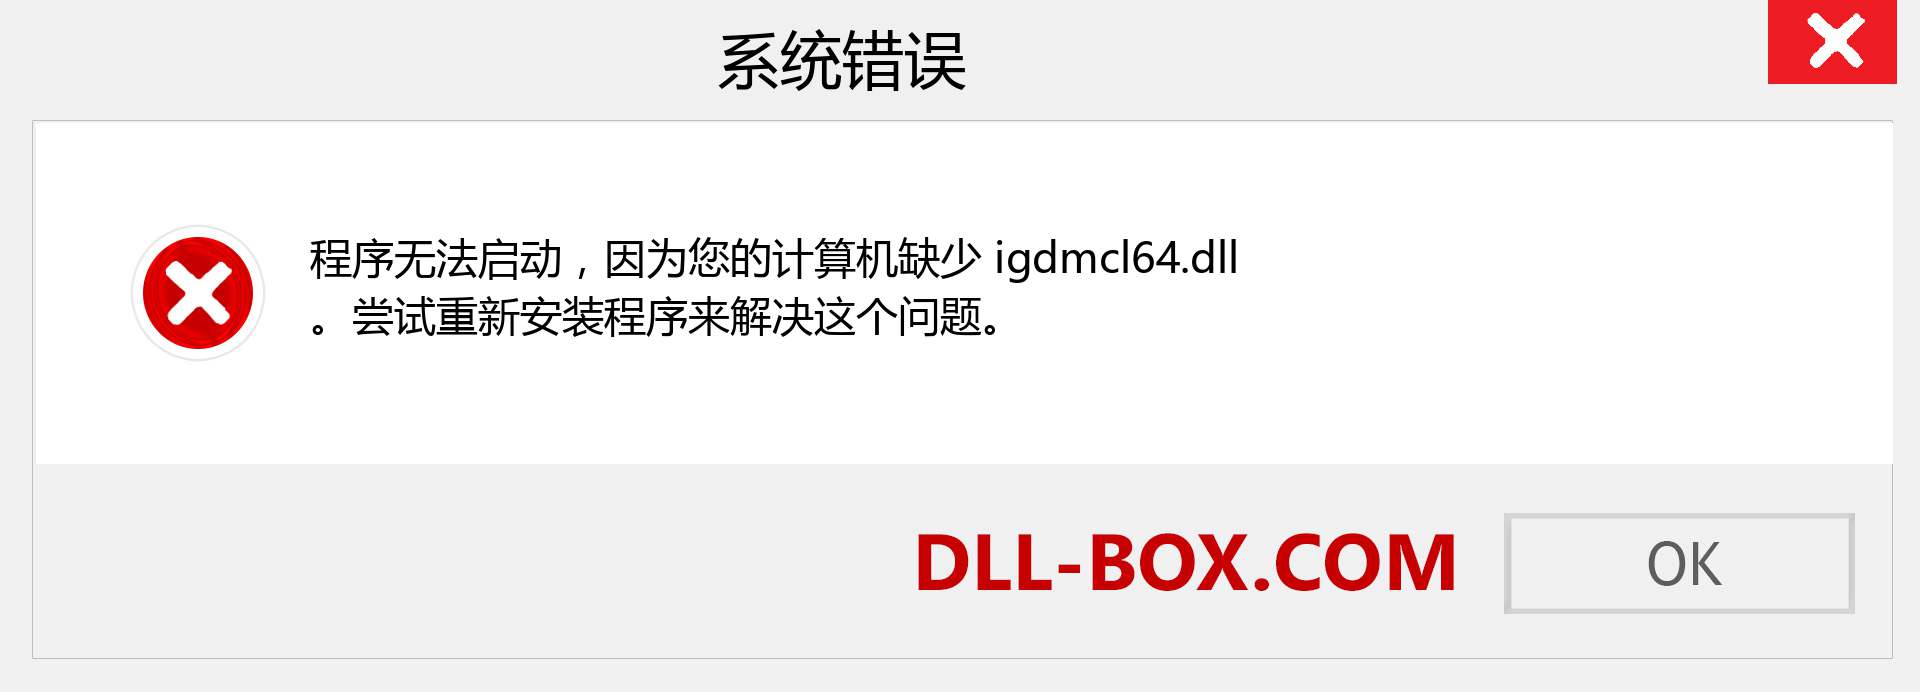 igdmcl64.dll 文件丢失？。 适用于 Windows 7、8、10 的下载 - 修复 Windows、照片、图像上的 igdmcl64 dll 丢失错误